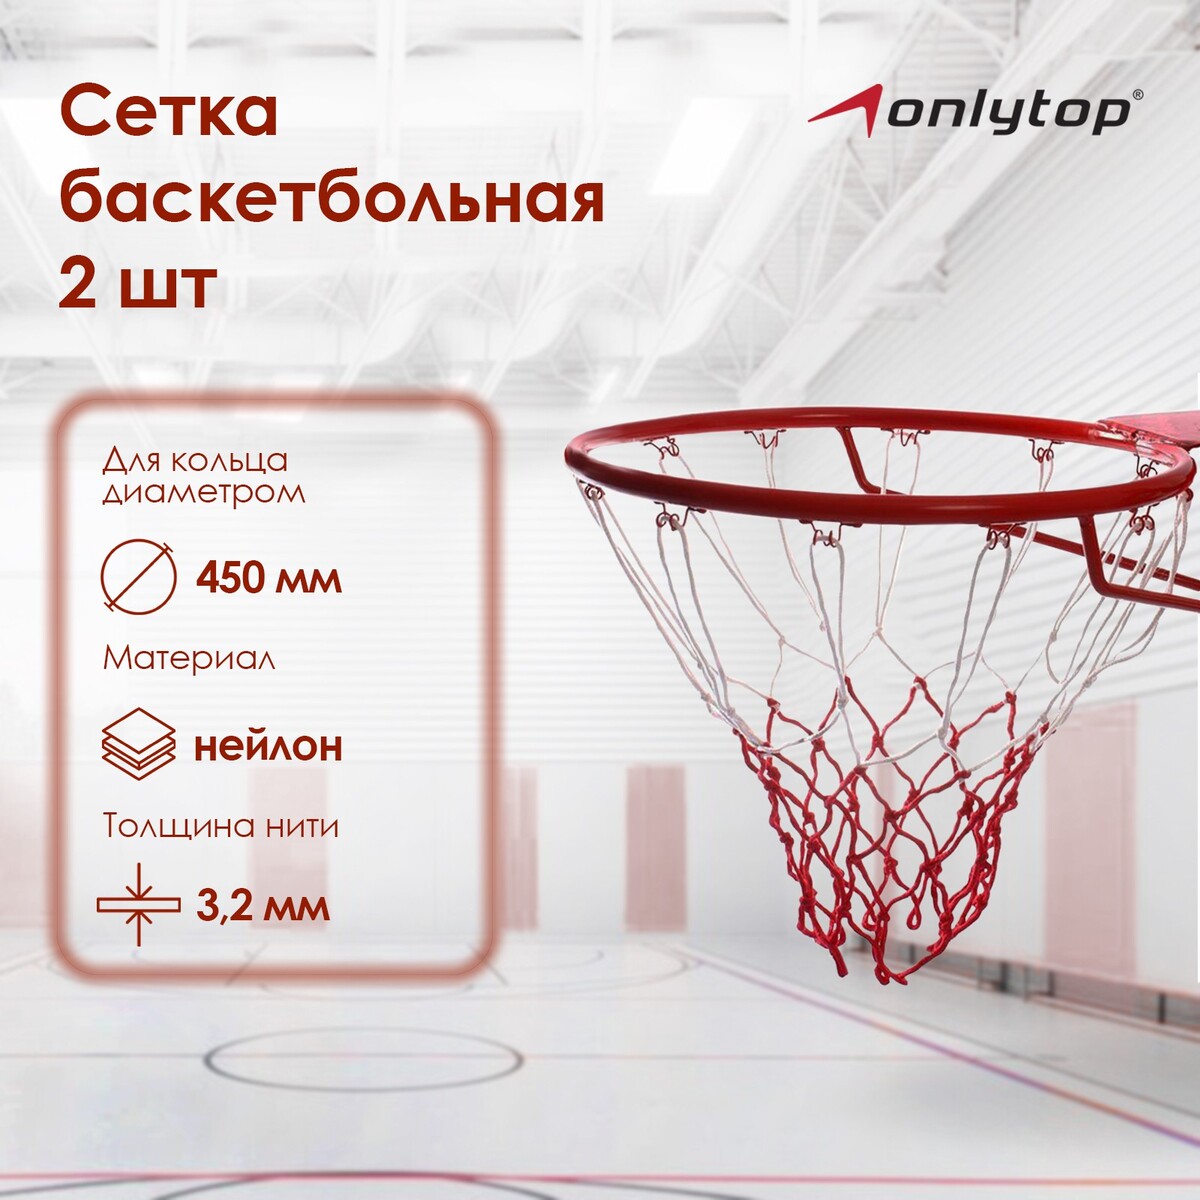 Сетка баскетбольная onlytop, 50 см, нить 3,2 мм, 2 шт. сетка баскетбольная zavodsporta d3 0 мм белый пп 1 шт